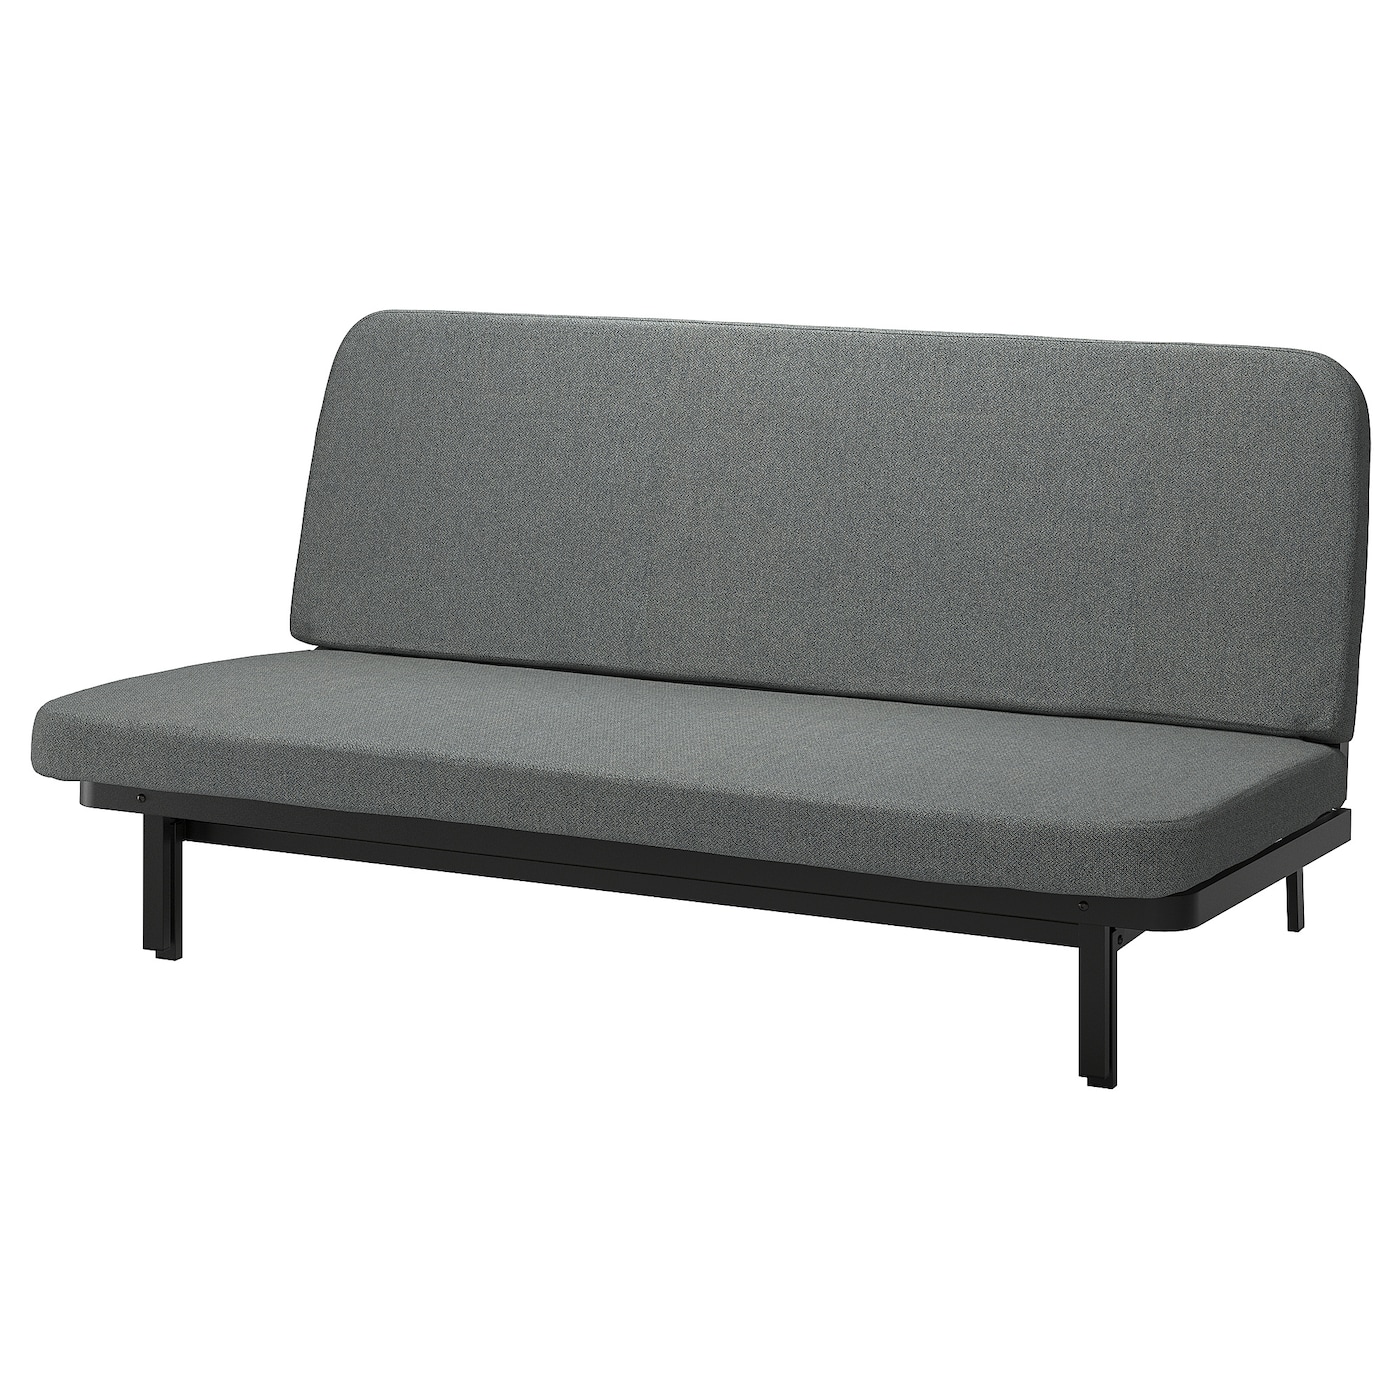 мультяшный матрас ленивый диван кровать подходит для детей татами маты креативный маленький диван кровать стул современная мебель для NYHAMN 3-местный диван-кровать, в комплекте пружинный матрас/Скартофта черный/светло-серый IKEA